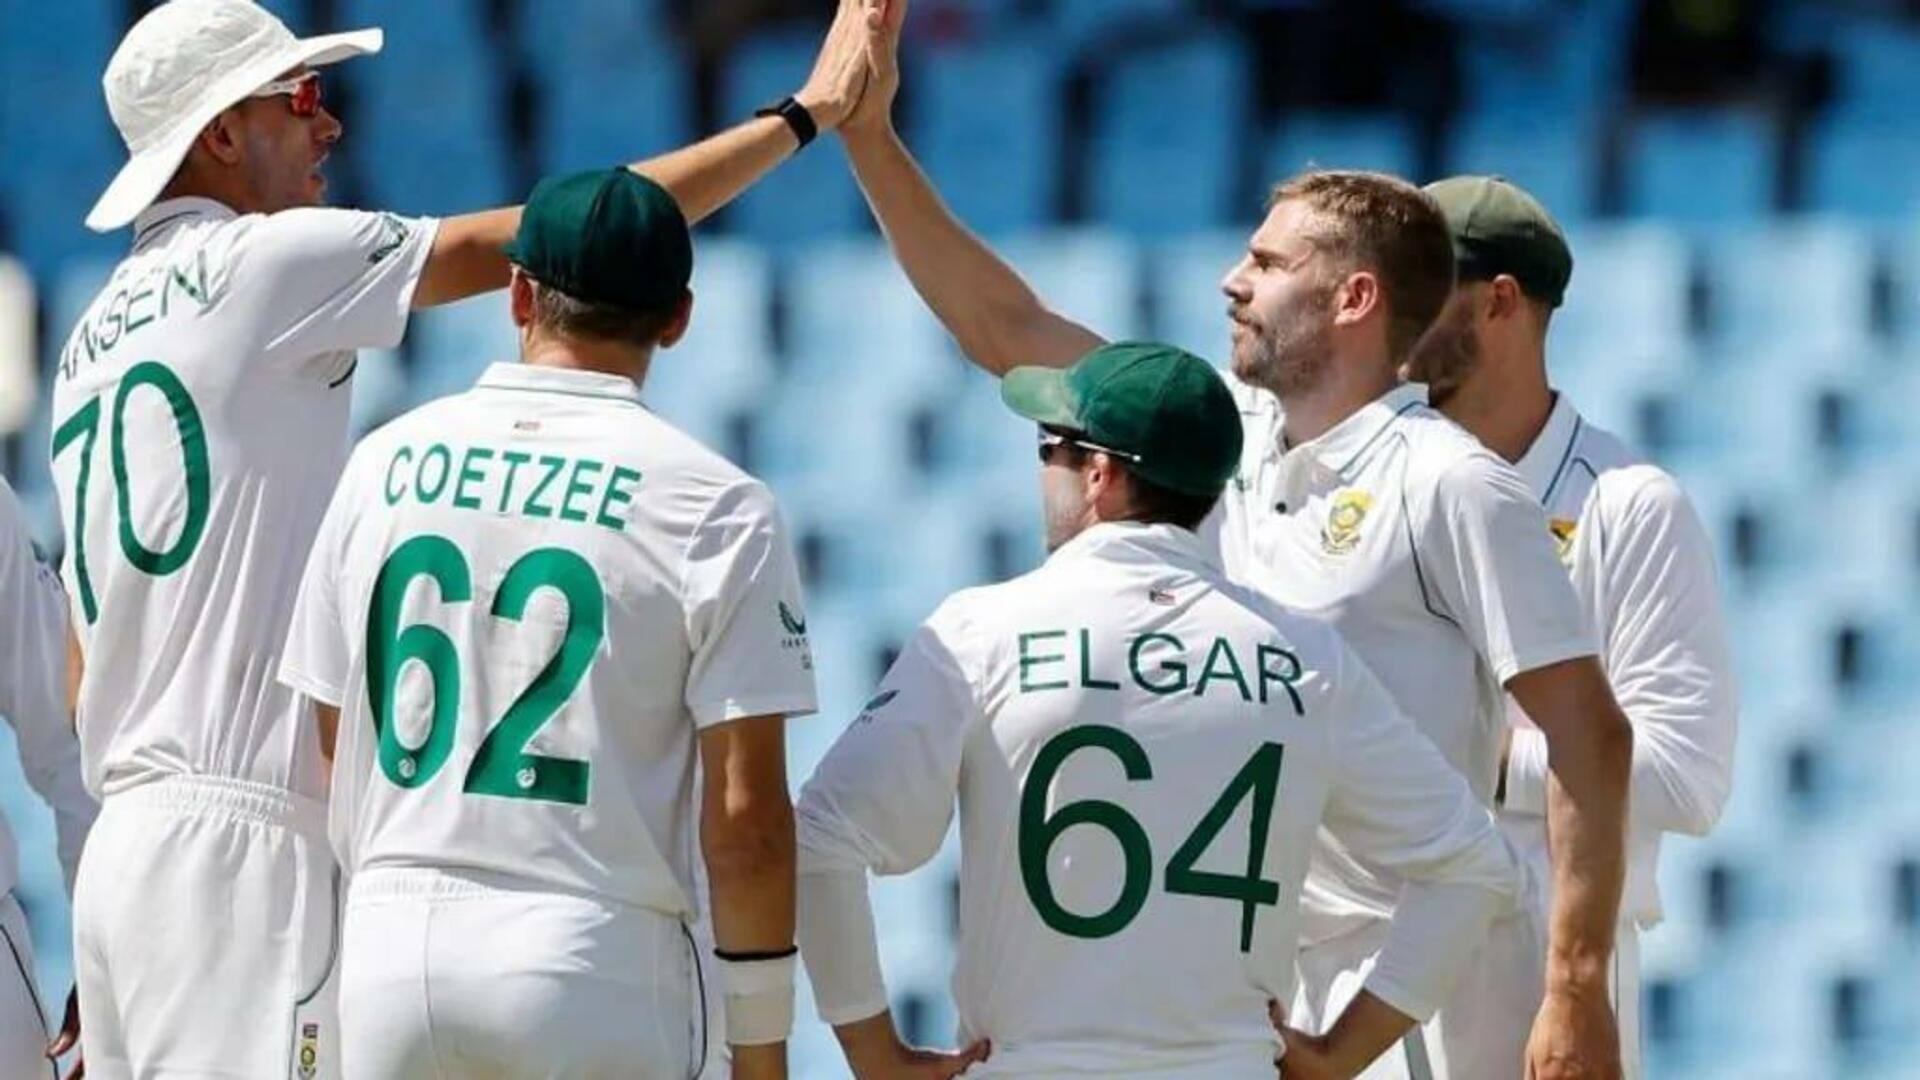 दूसरा टेस्ट: दक्षिण अफ्रीका ने वेस्टइंडीज को 284 रन से हराया, मैच में बने ये रिकॉर्ड्स